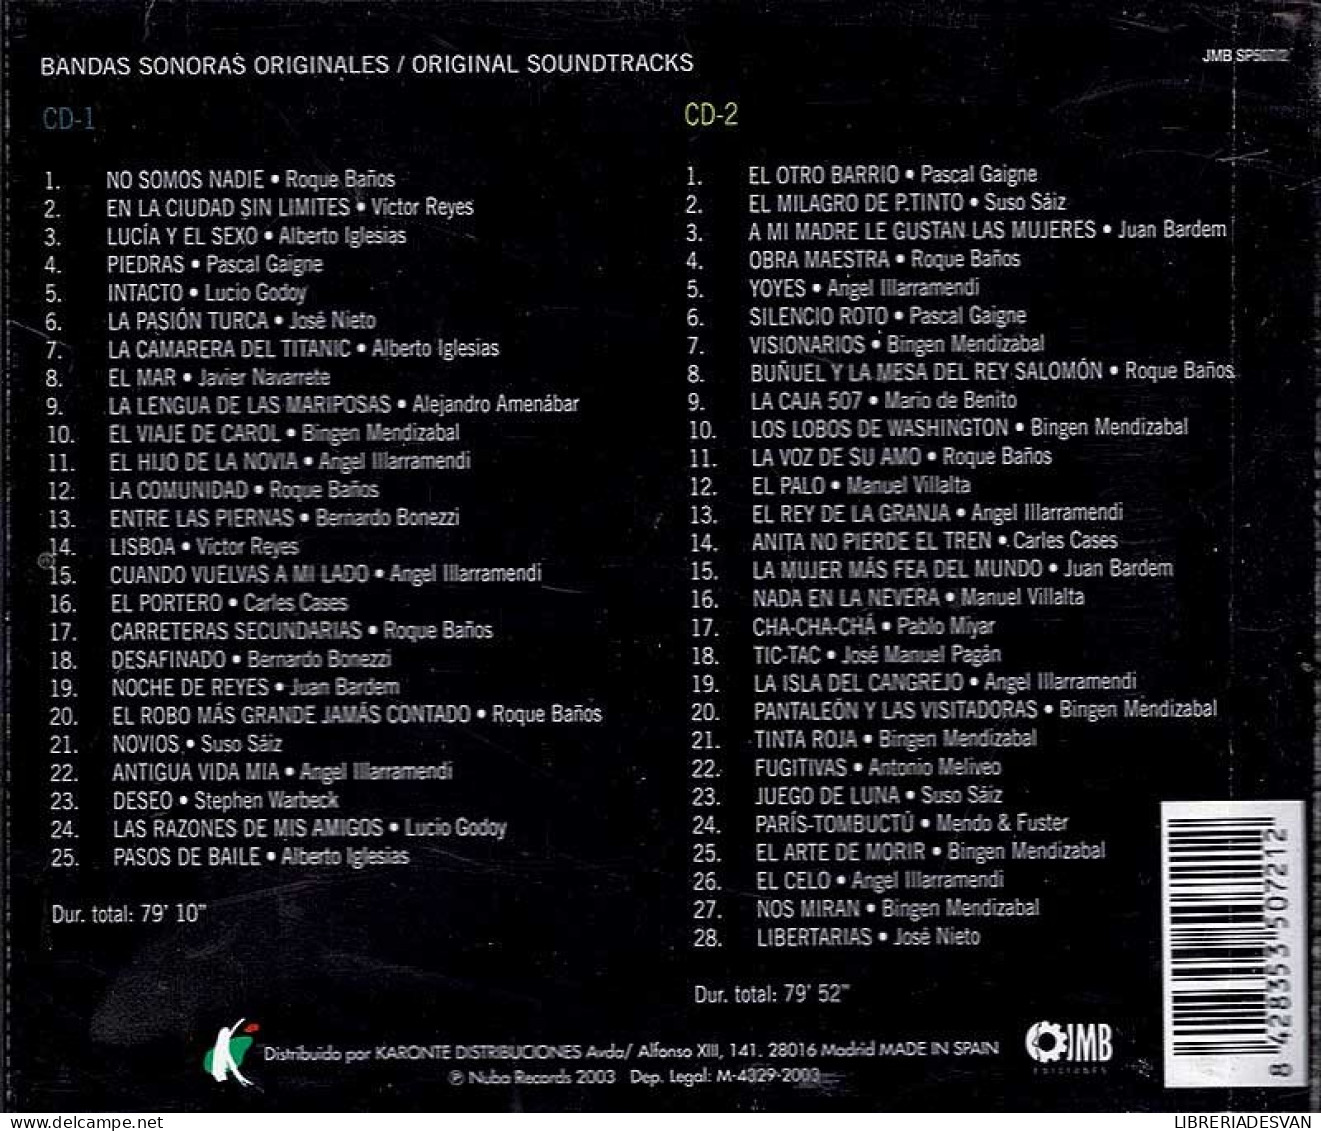 Una Musica De Cine Español (Volumen 1). 2 X CD - Filmmuziek